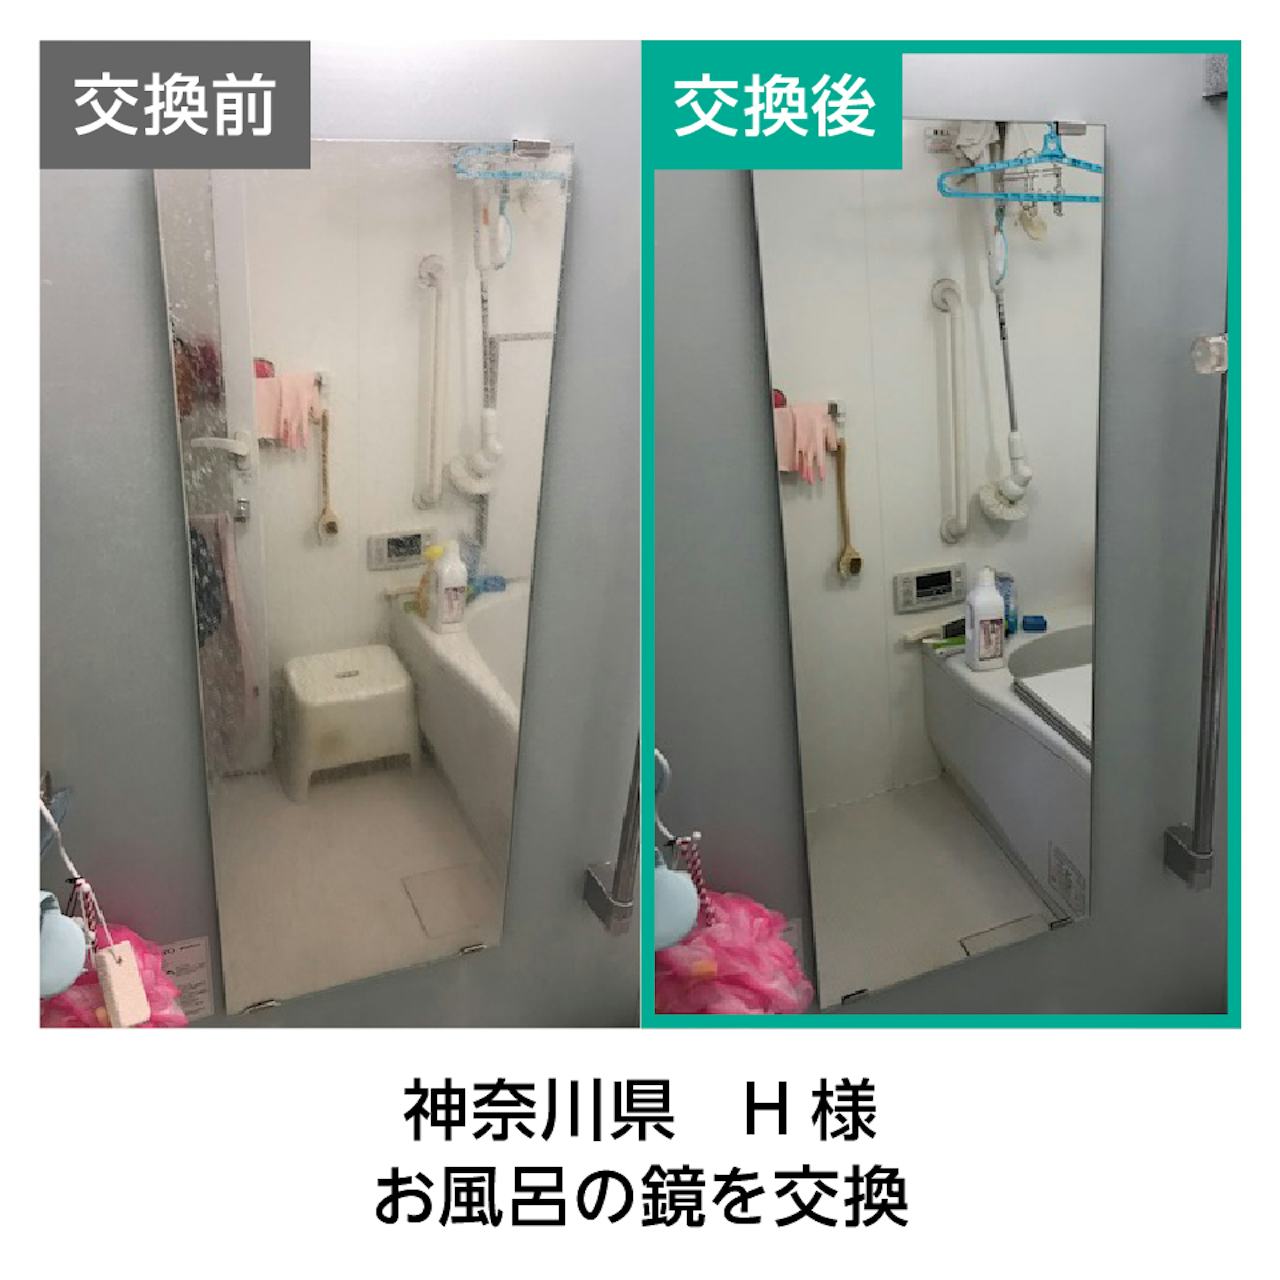 ウロコ(水垢)がついたお風呂の鏡を交換した事例(1)